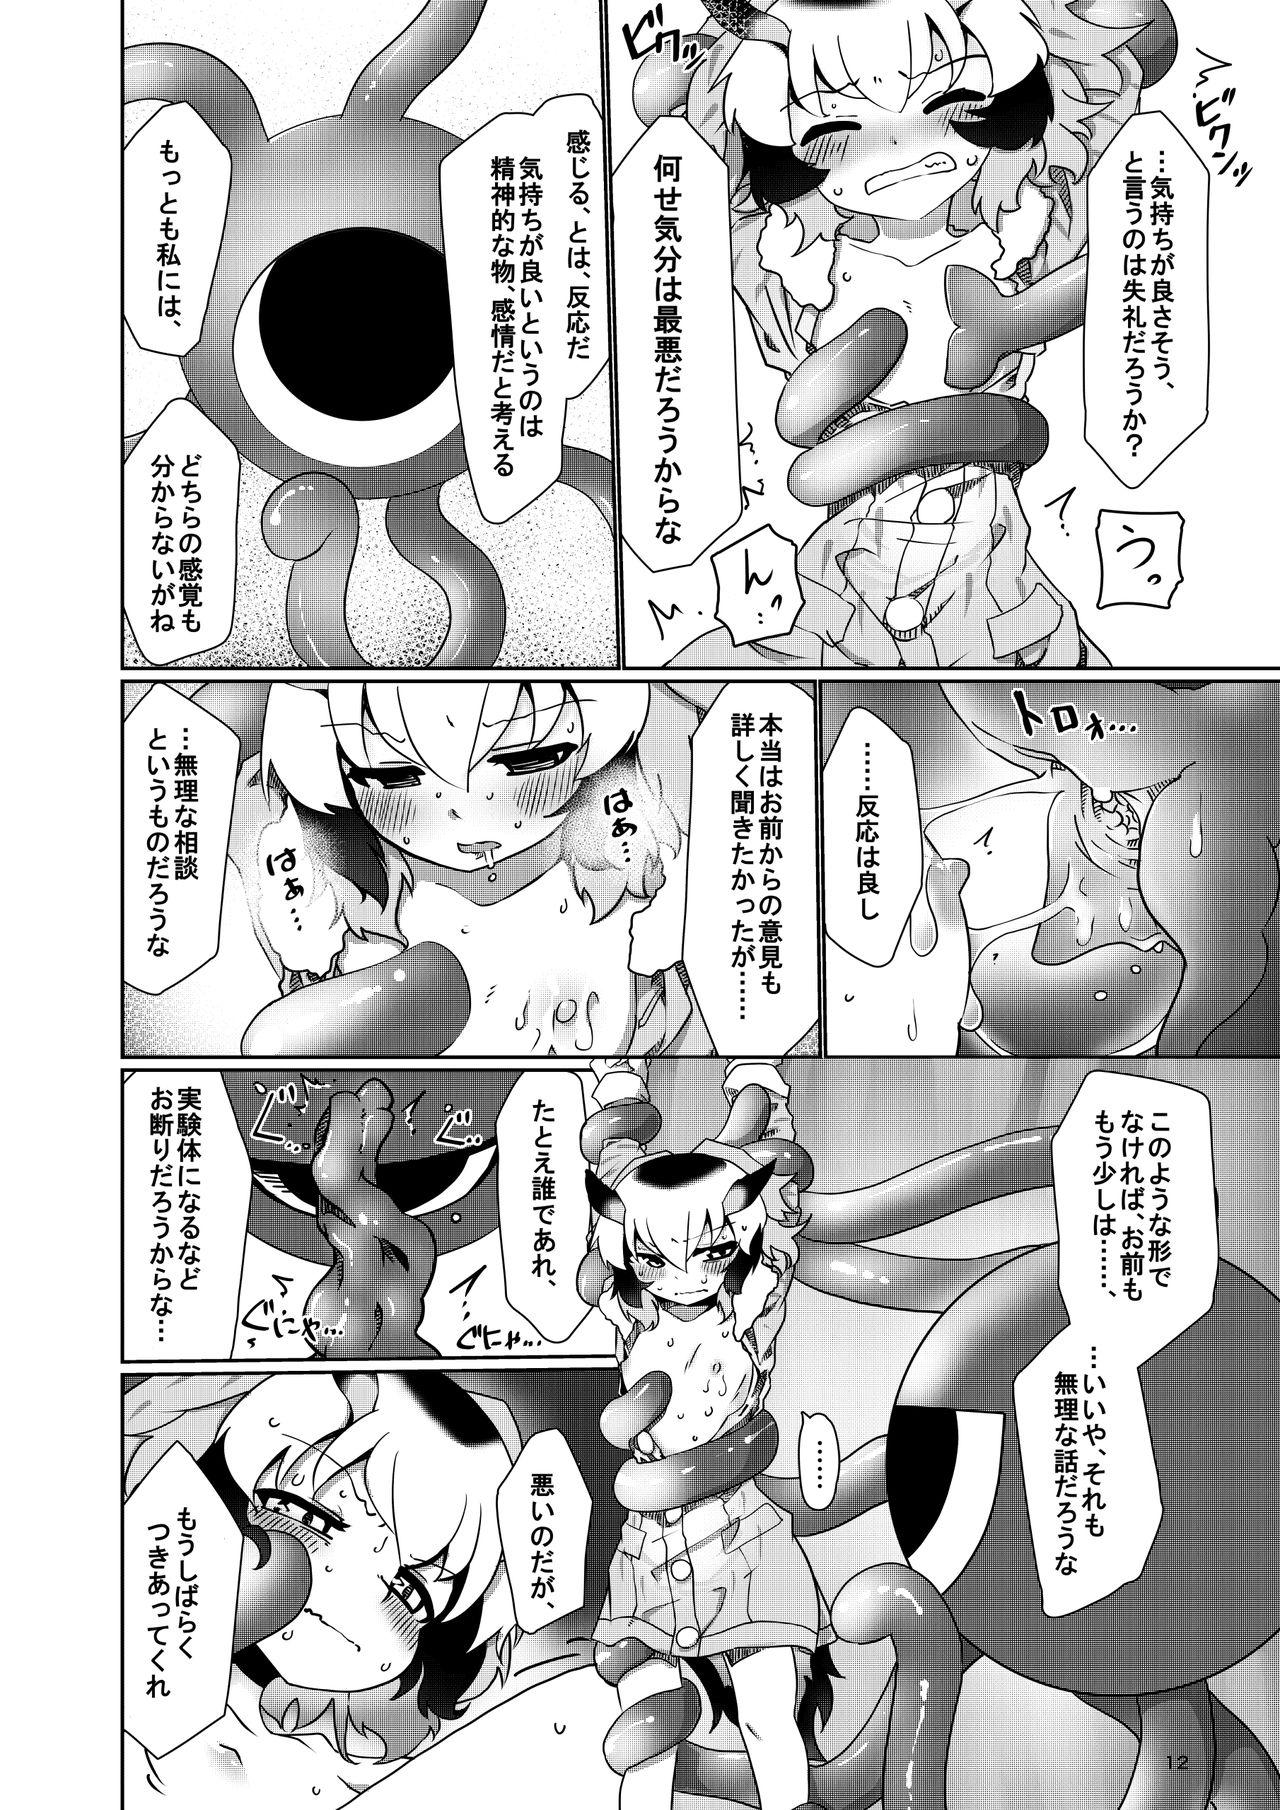 Tiny Titties APPLE WOLF 0007 Kono wa Ecchi 4 - Kemono friends Nasty Free Porn - Page 12